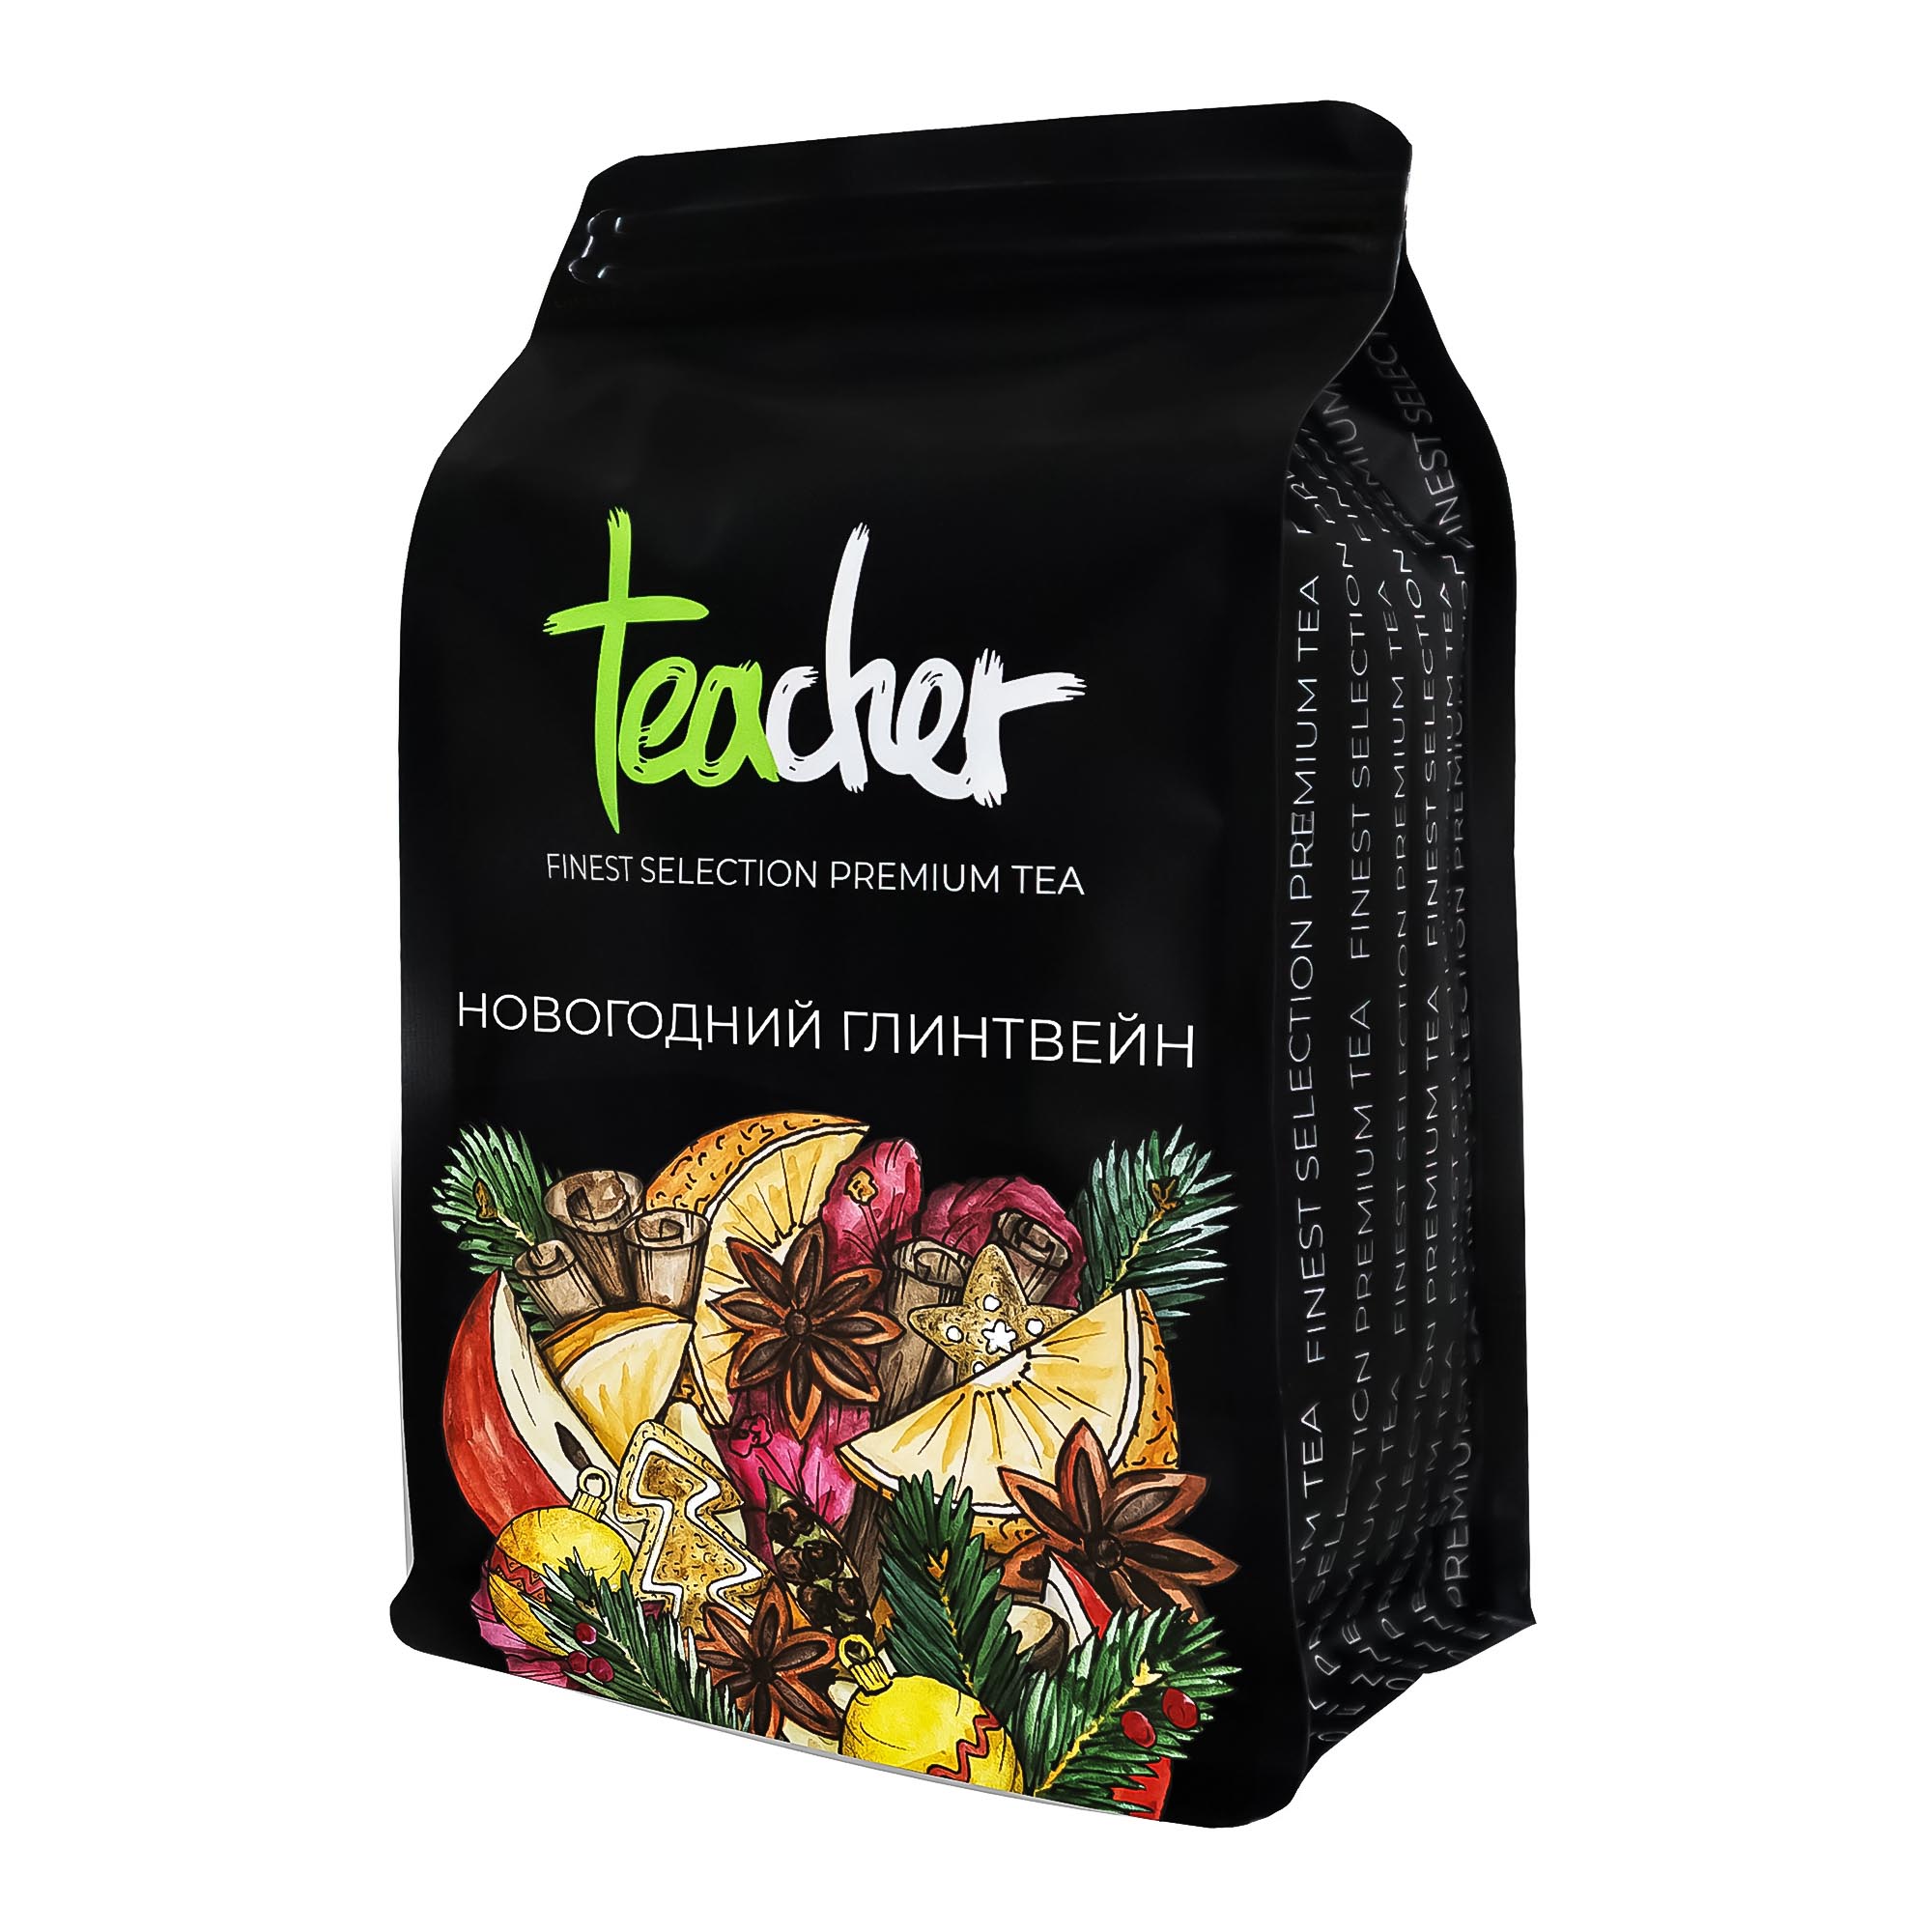 именной чай новогодний Чай Teacher Новогодний глинтвейн 500 г